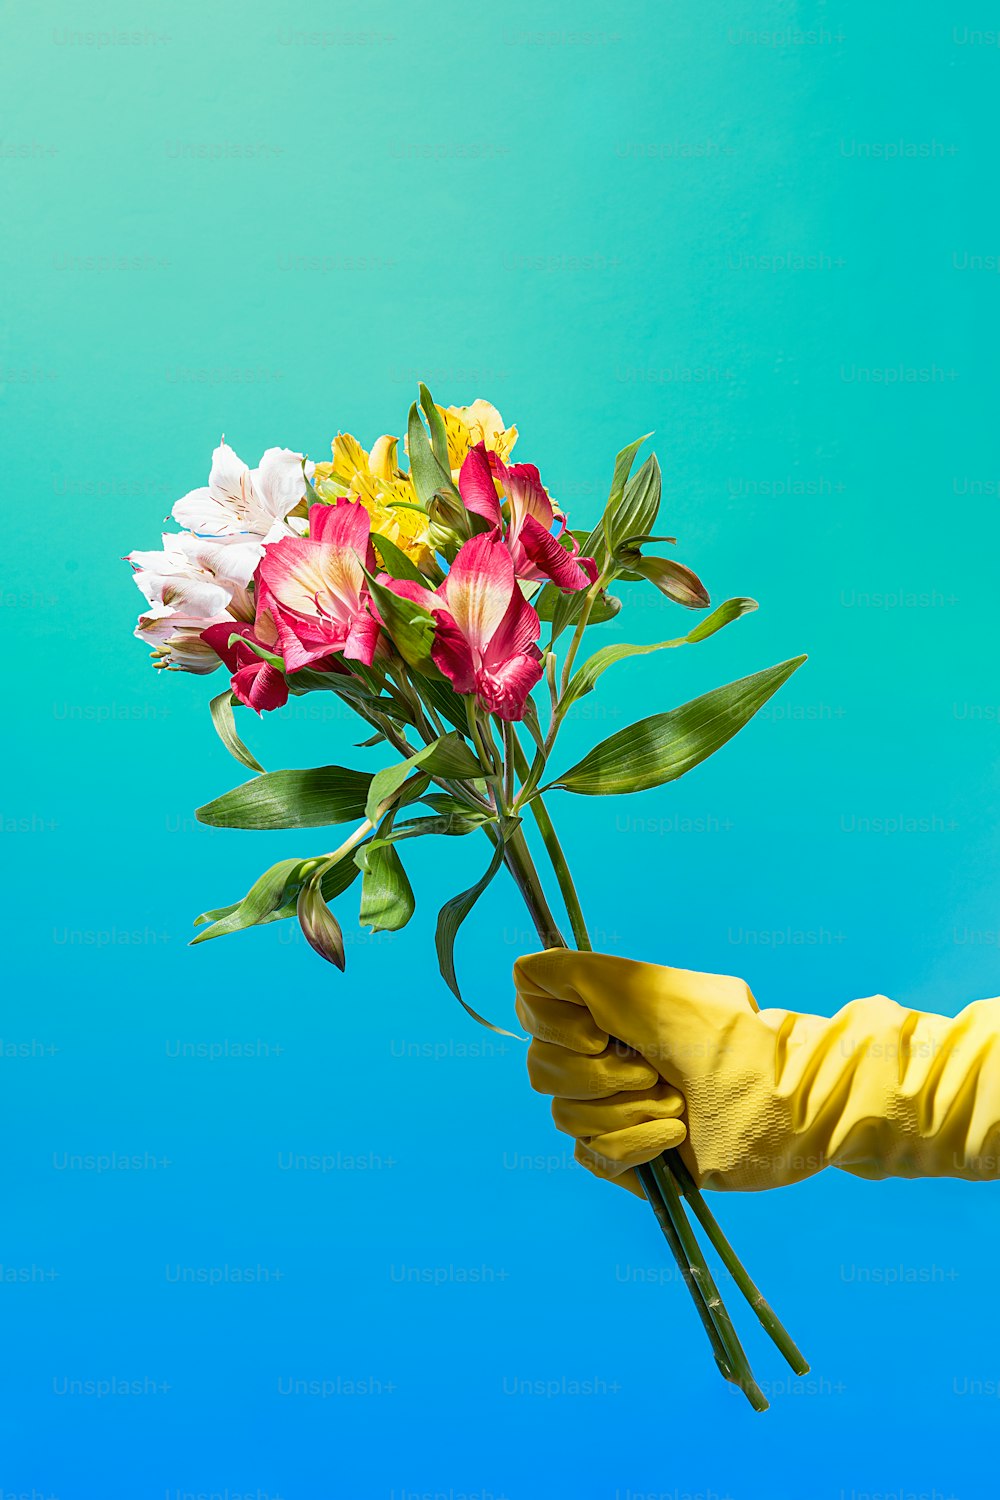 une personne portant des gants de caoutchouc jaunes tenant un bouquet de fleurs